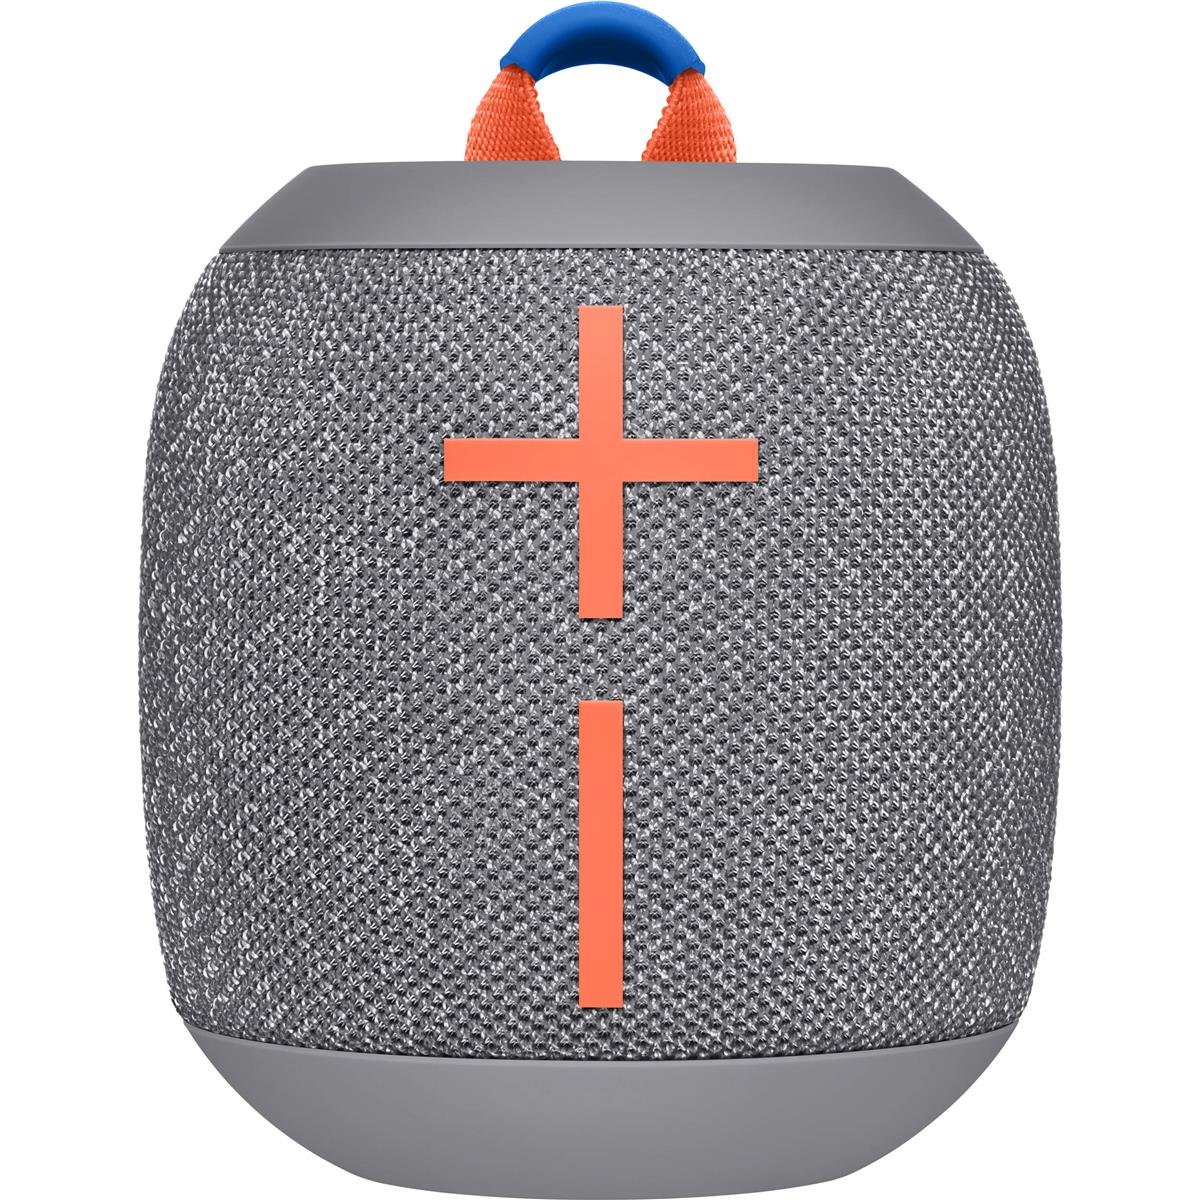 Портативная Bluetooth-колонка Logitech Ultimate Ears WONDERBOOM 2, серый цвет дробленого льда